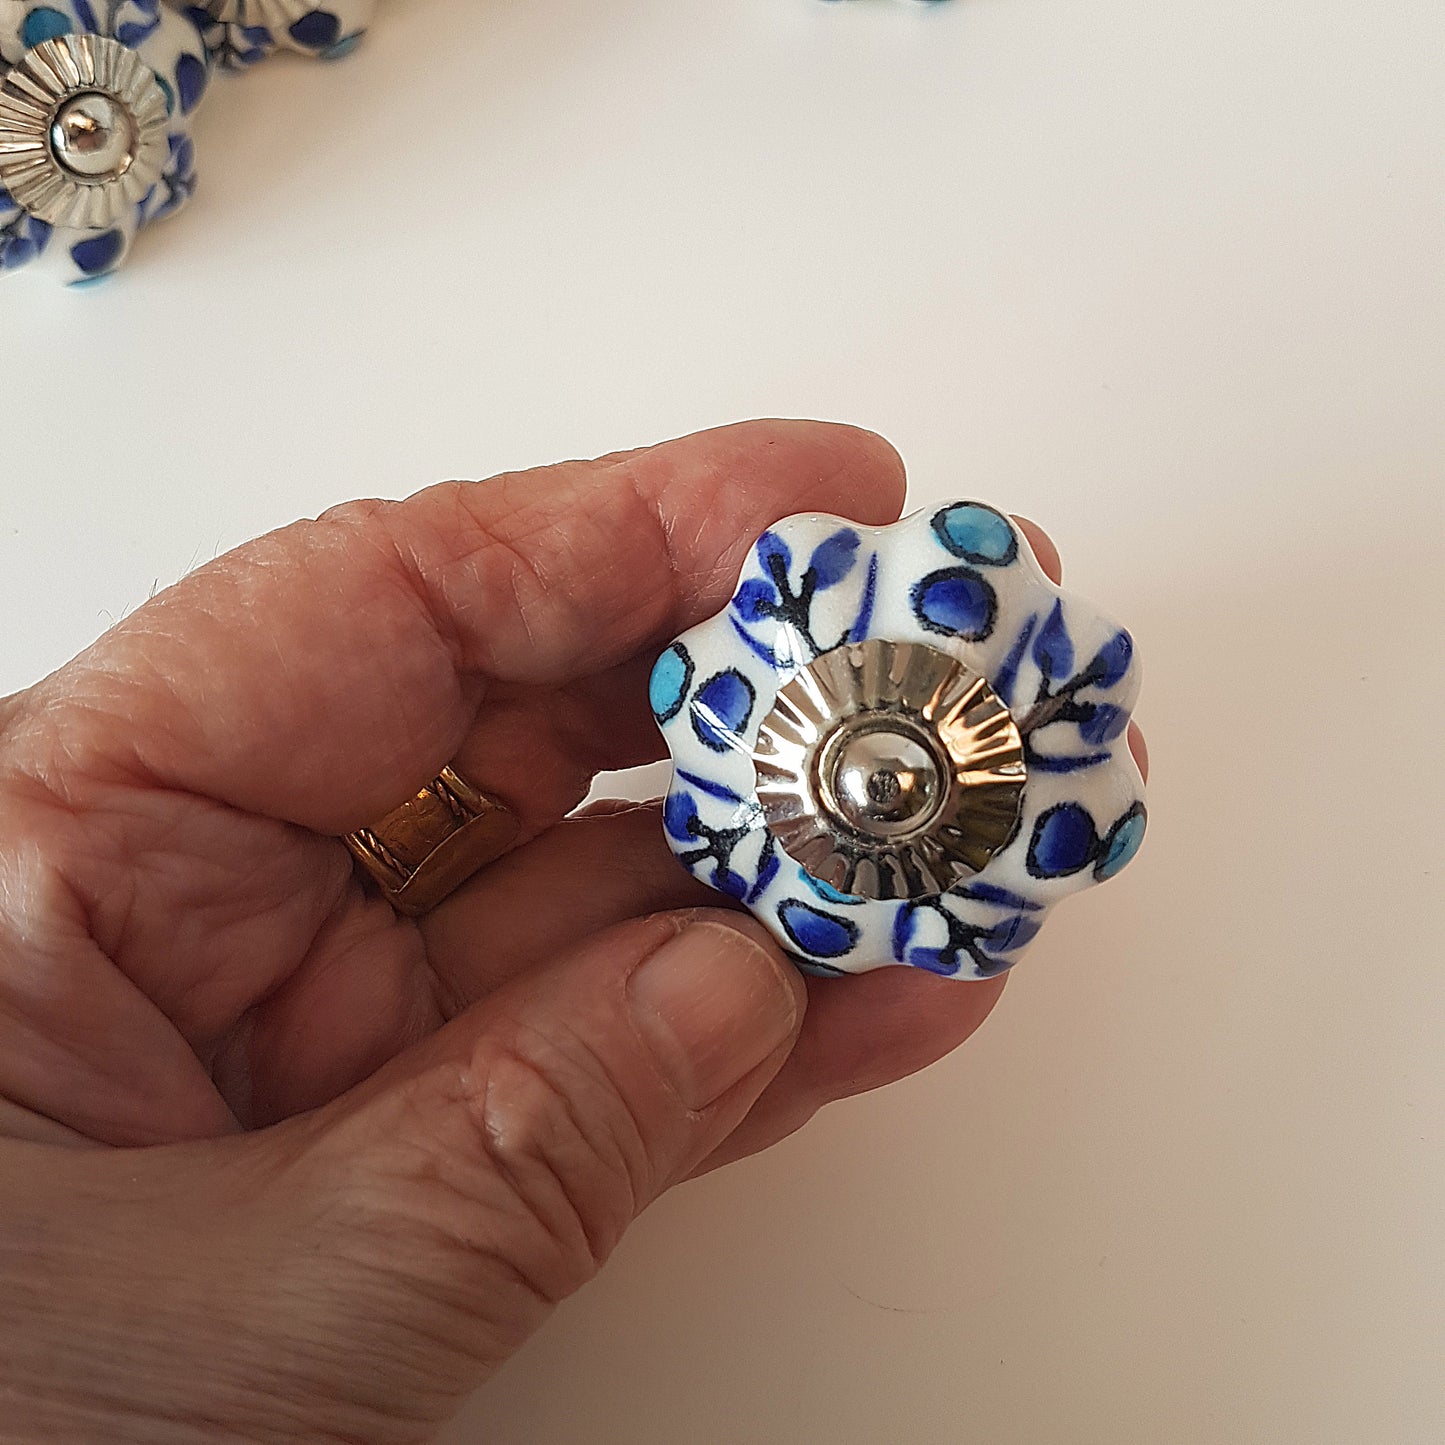 Ensemble de 12 poignées de tiroir à bouton d'armoire floral bleu et blanc design Delft.